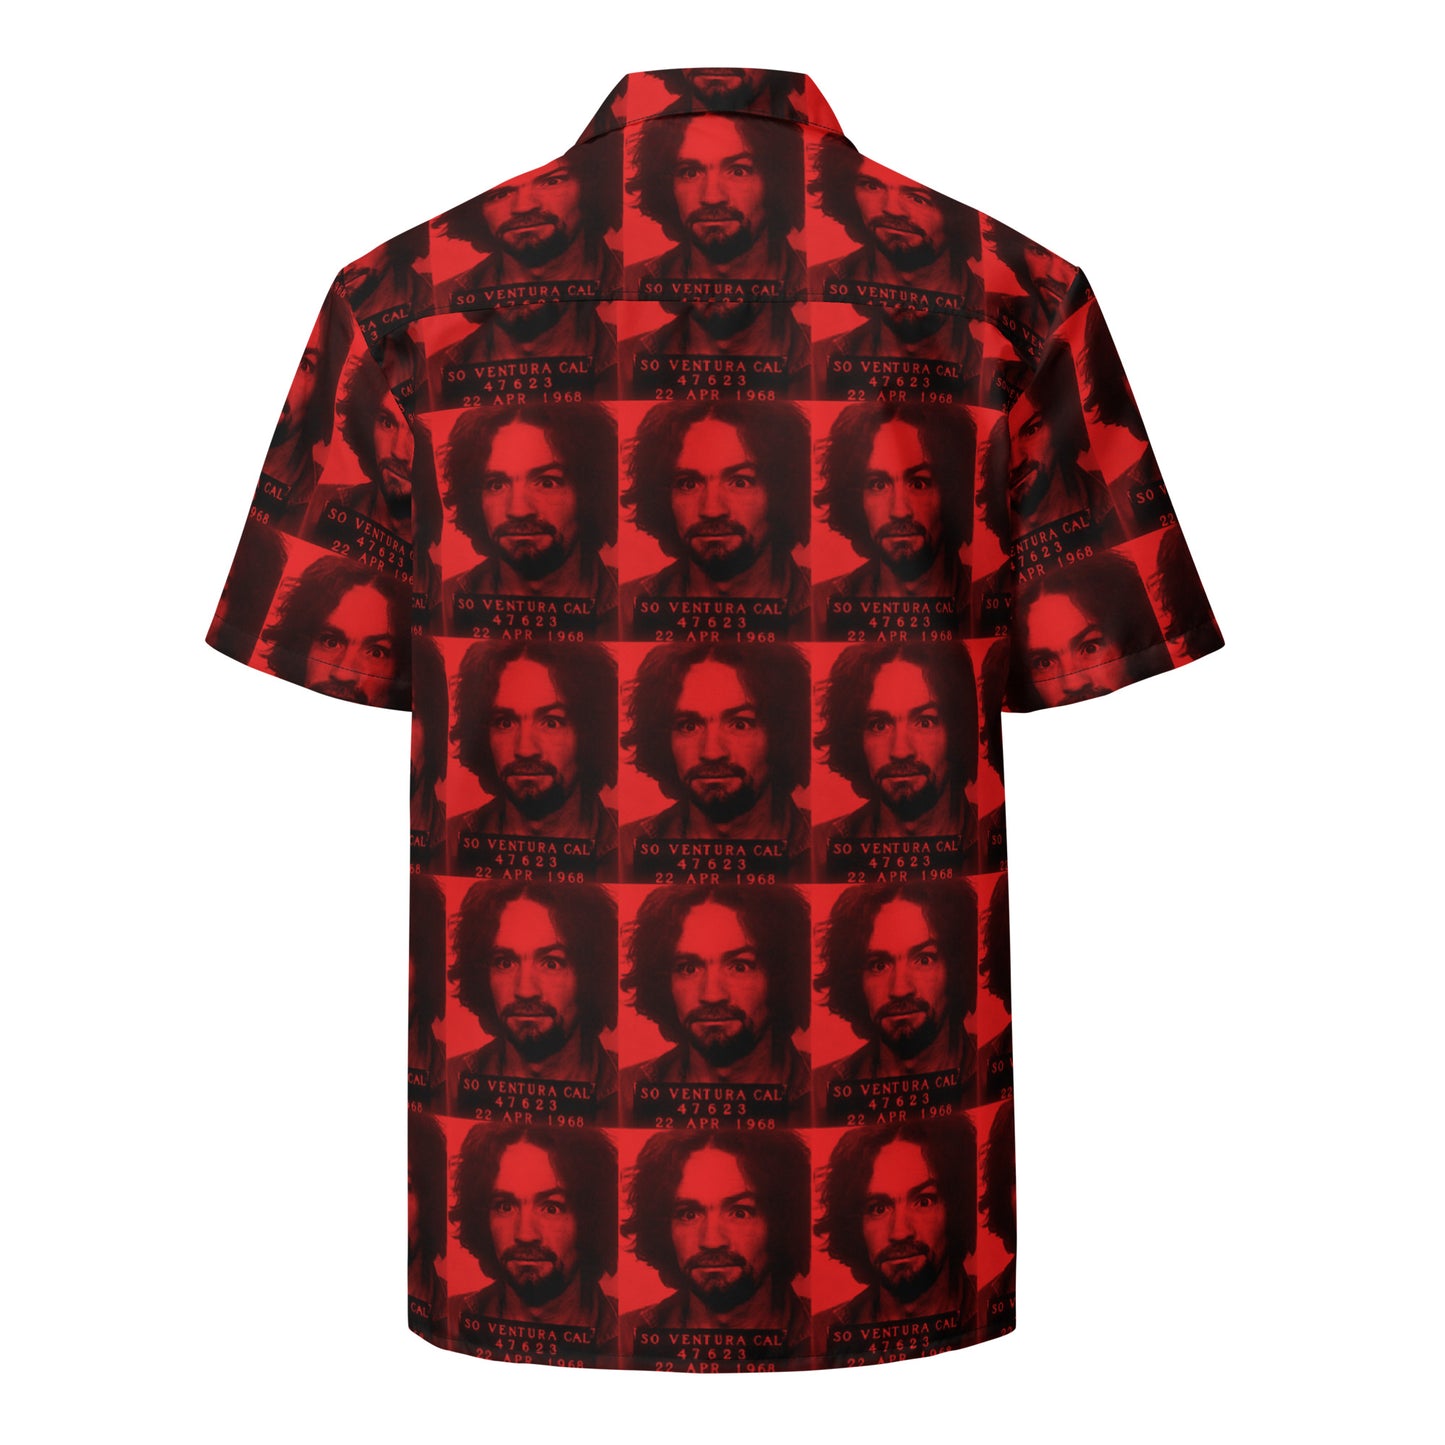 Charles Manson shirt